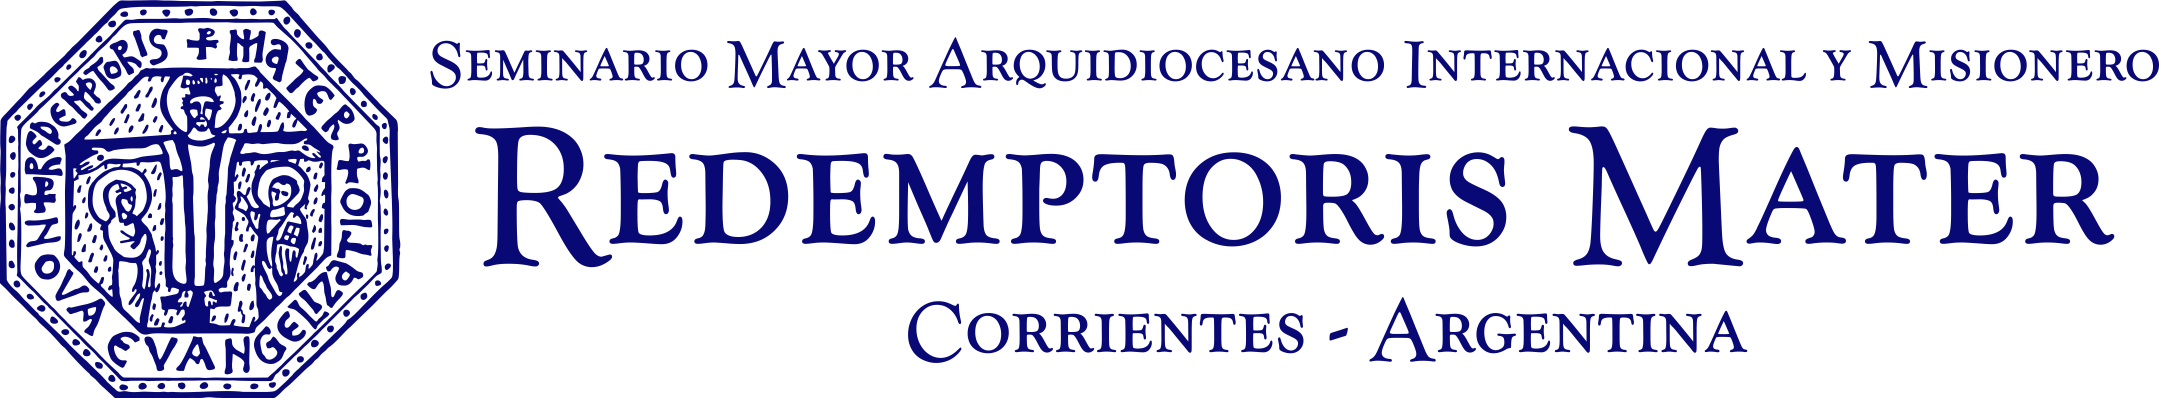 Redemptoris Mater Corrientes